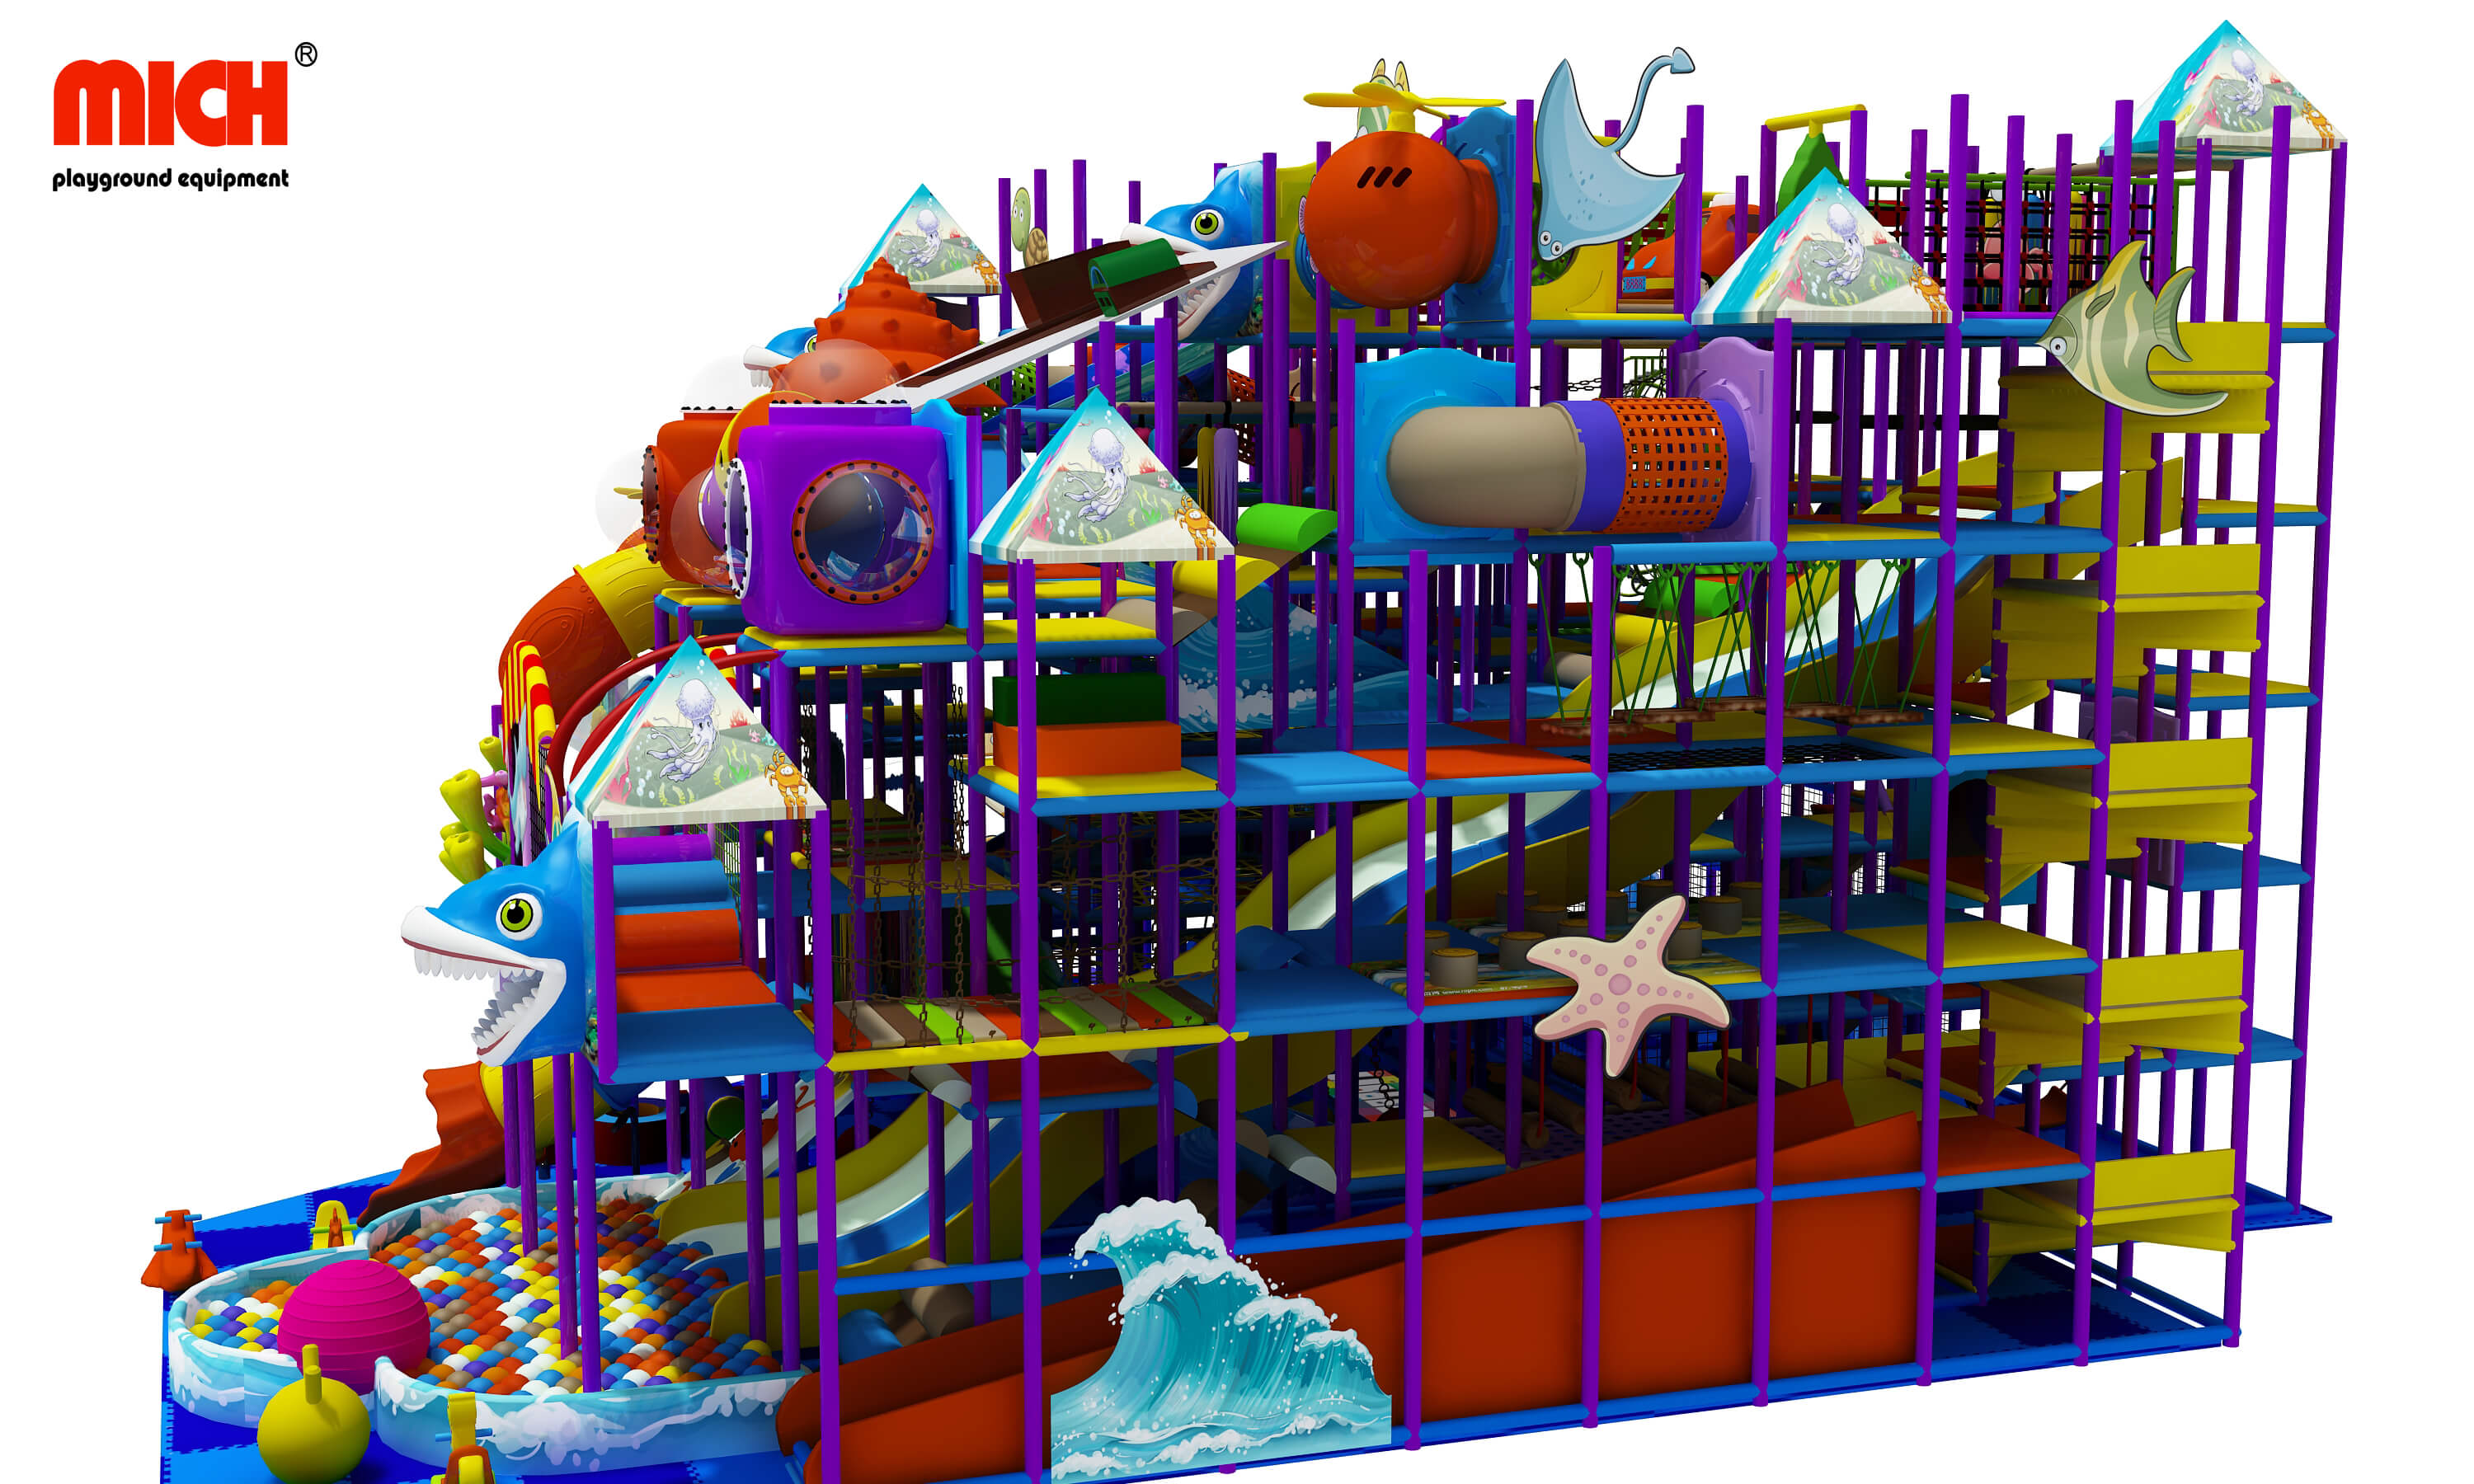 Ocean bertema 6 level anak -anak playhouse lembut